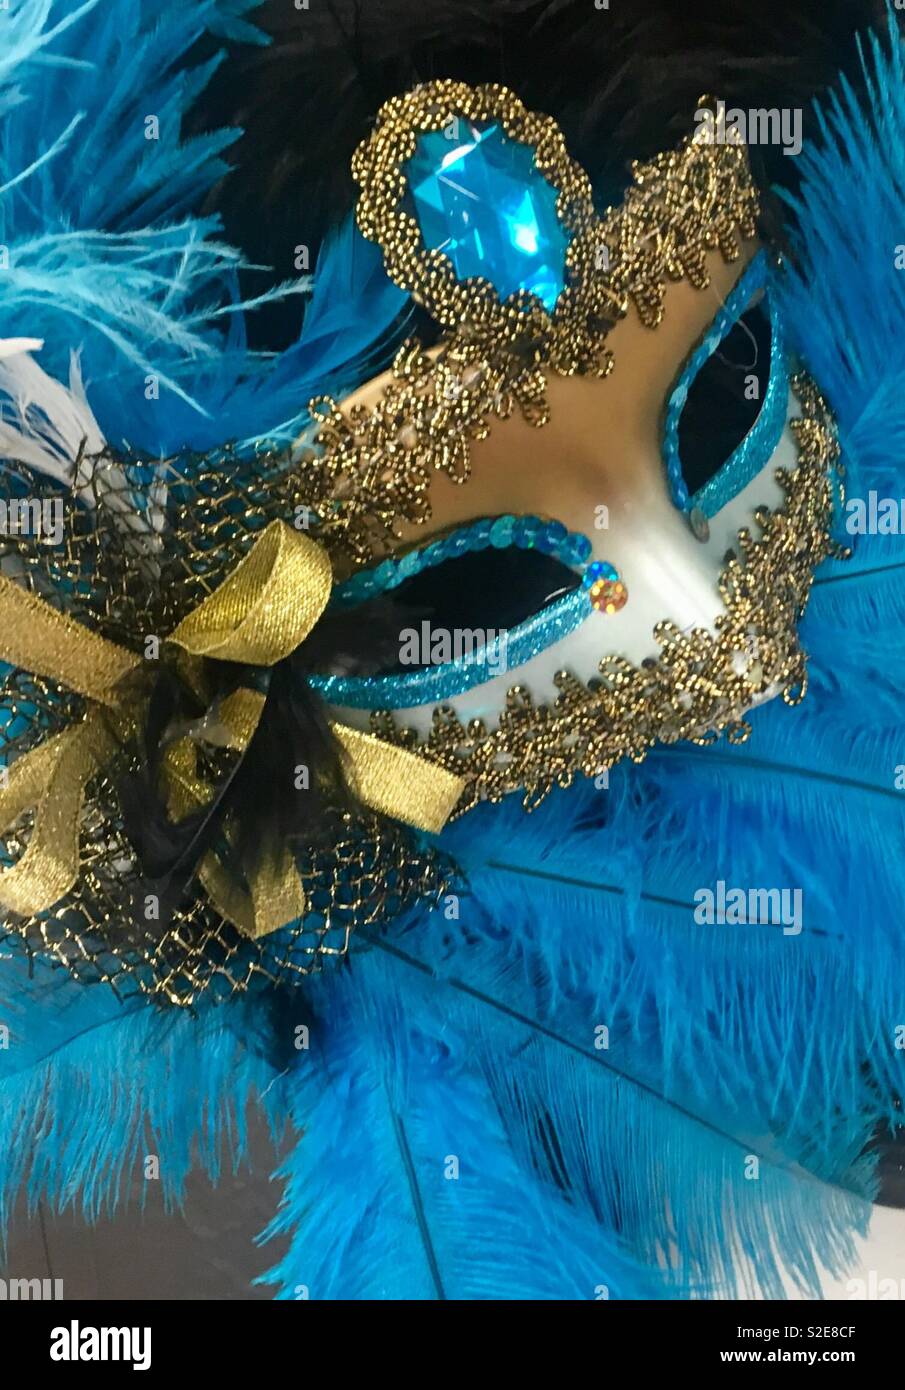 masquerade ball decor Stock Photo